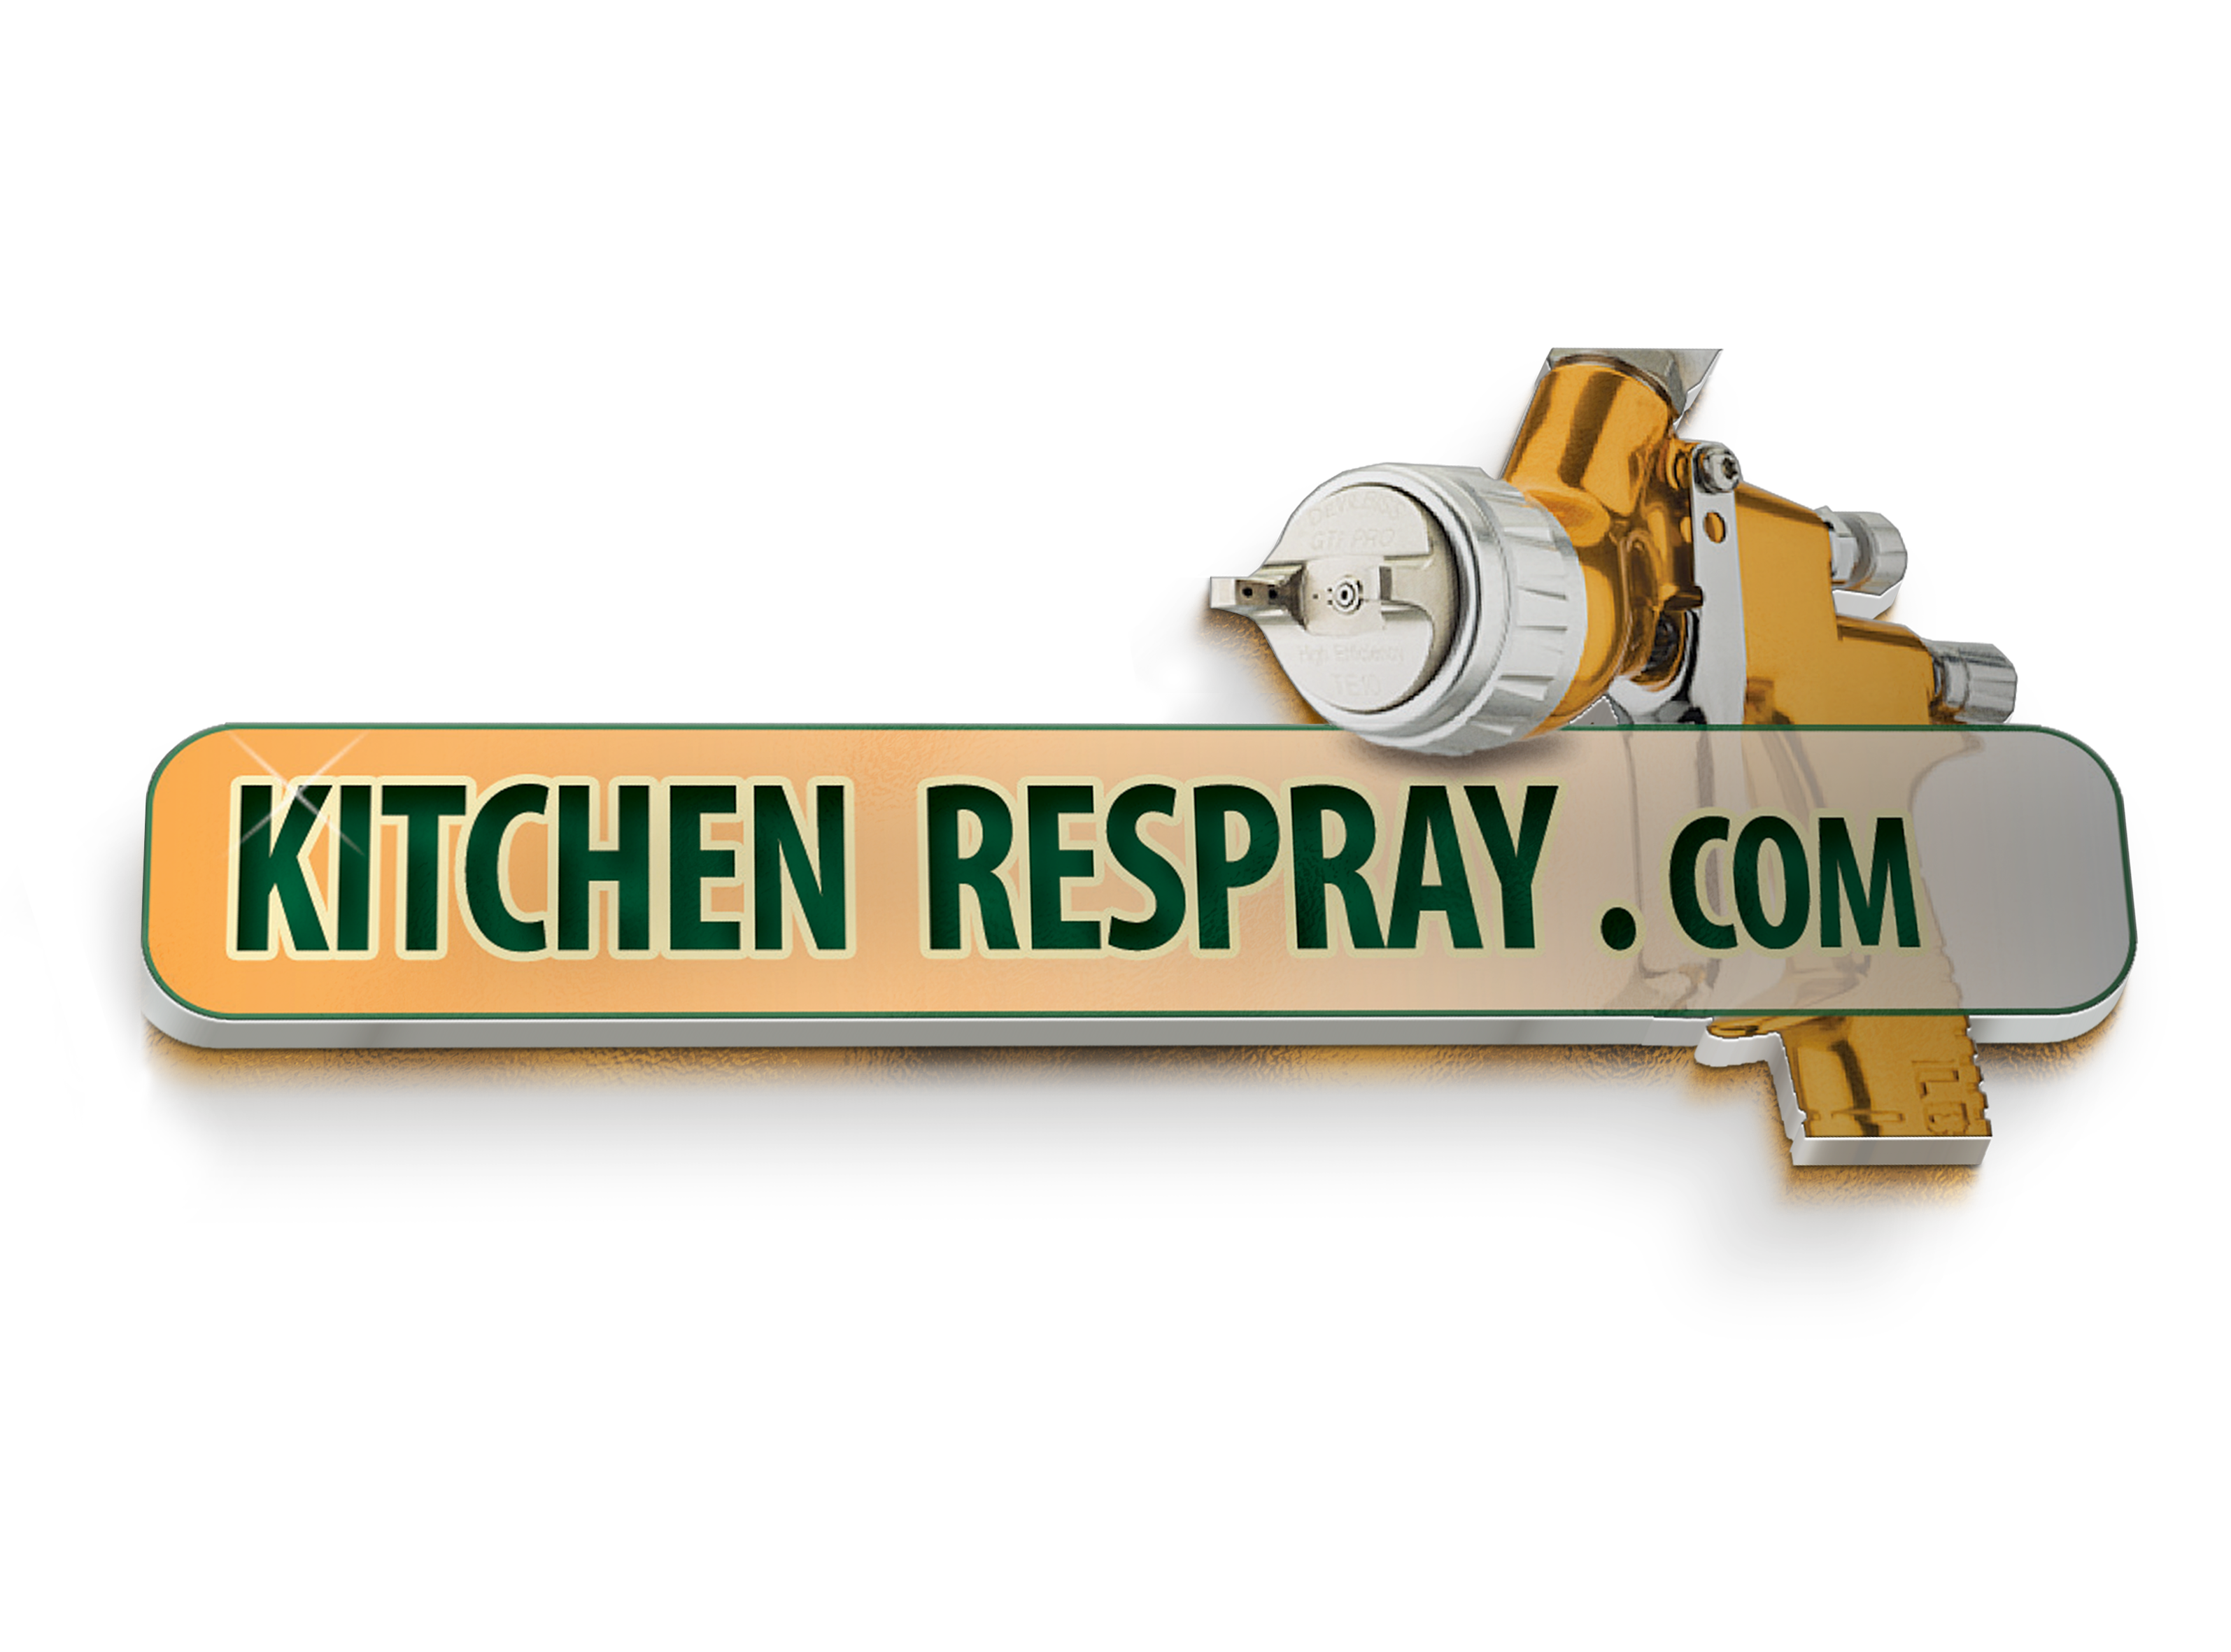 Kitchen Respray logo